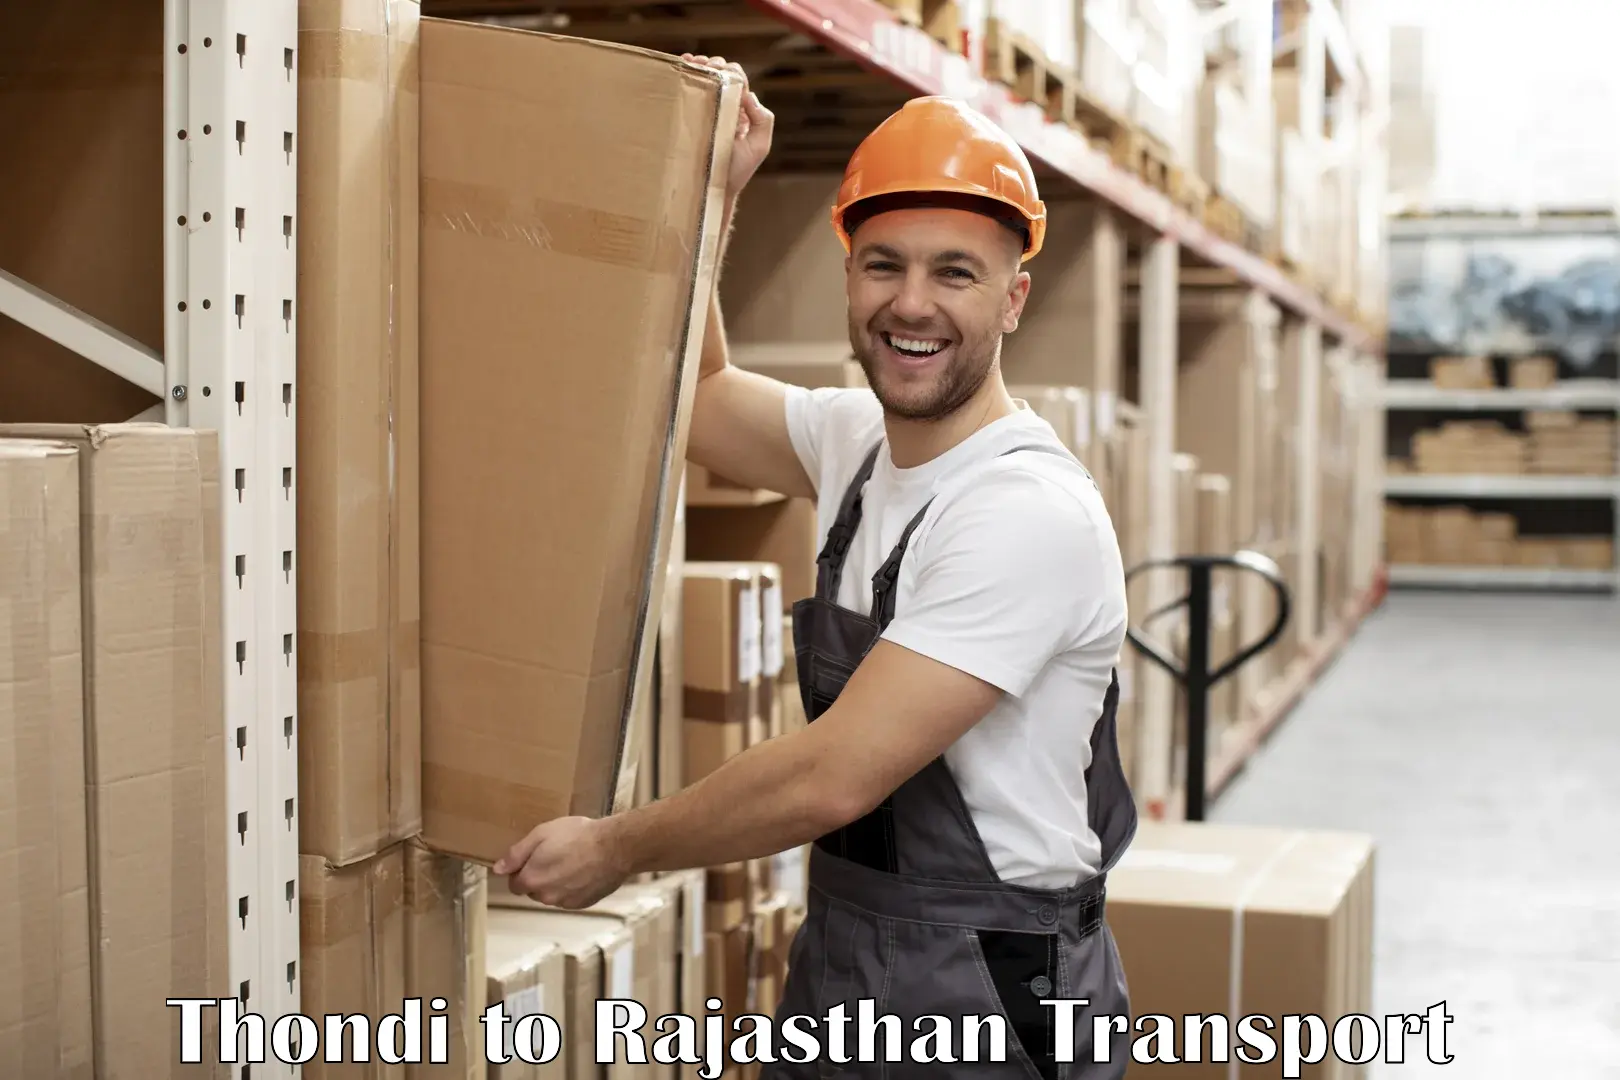 Daily transport service Thondi to Rajgarh Rajasthan